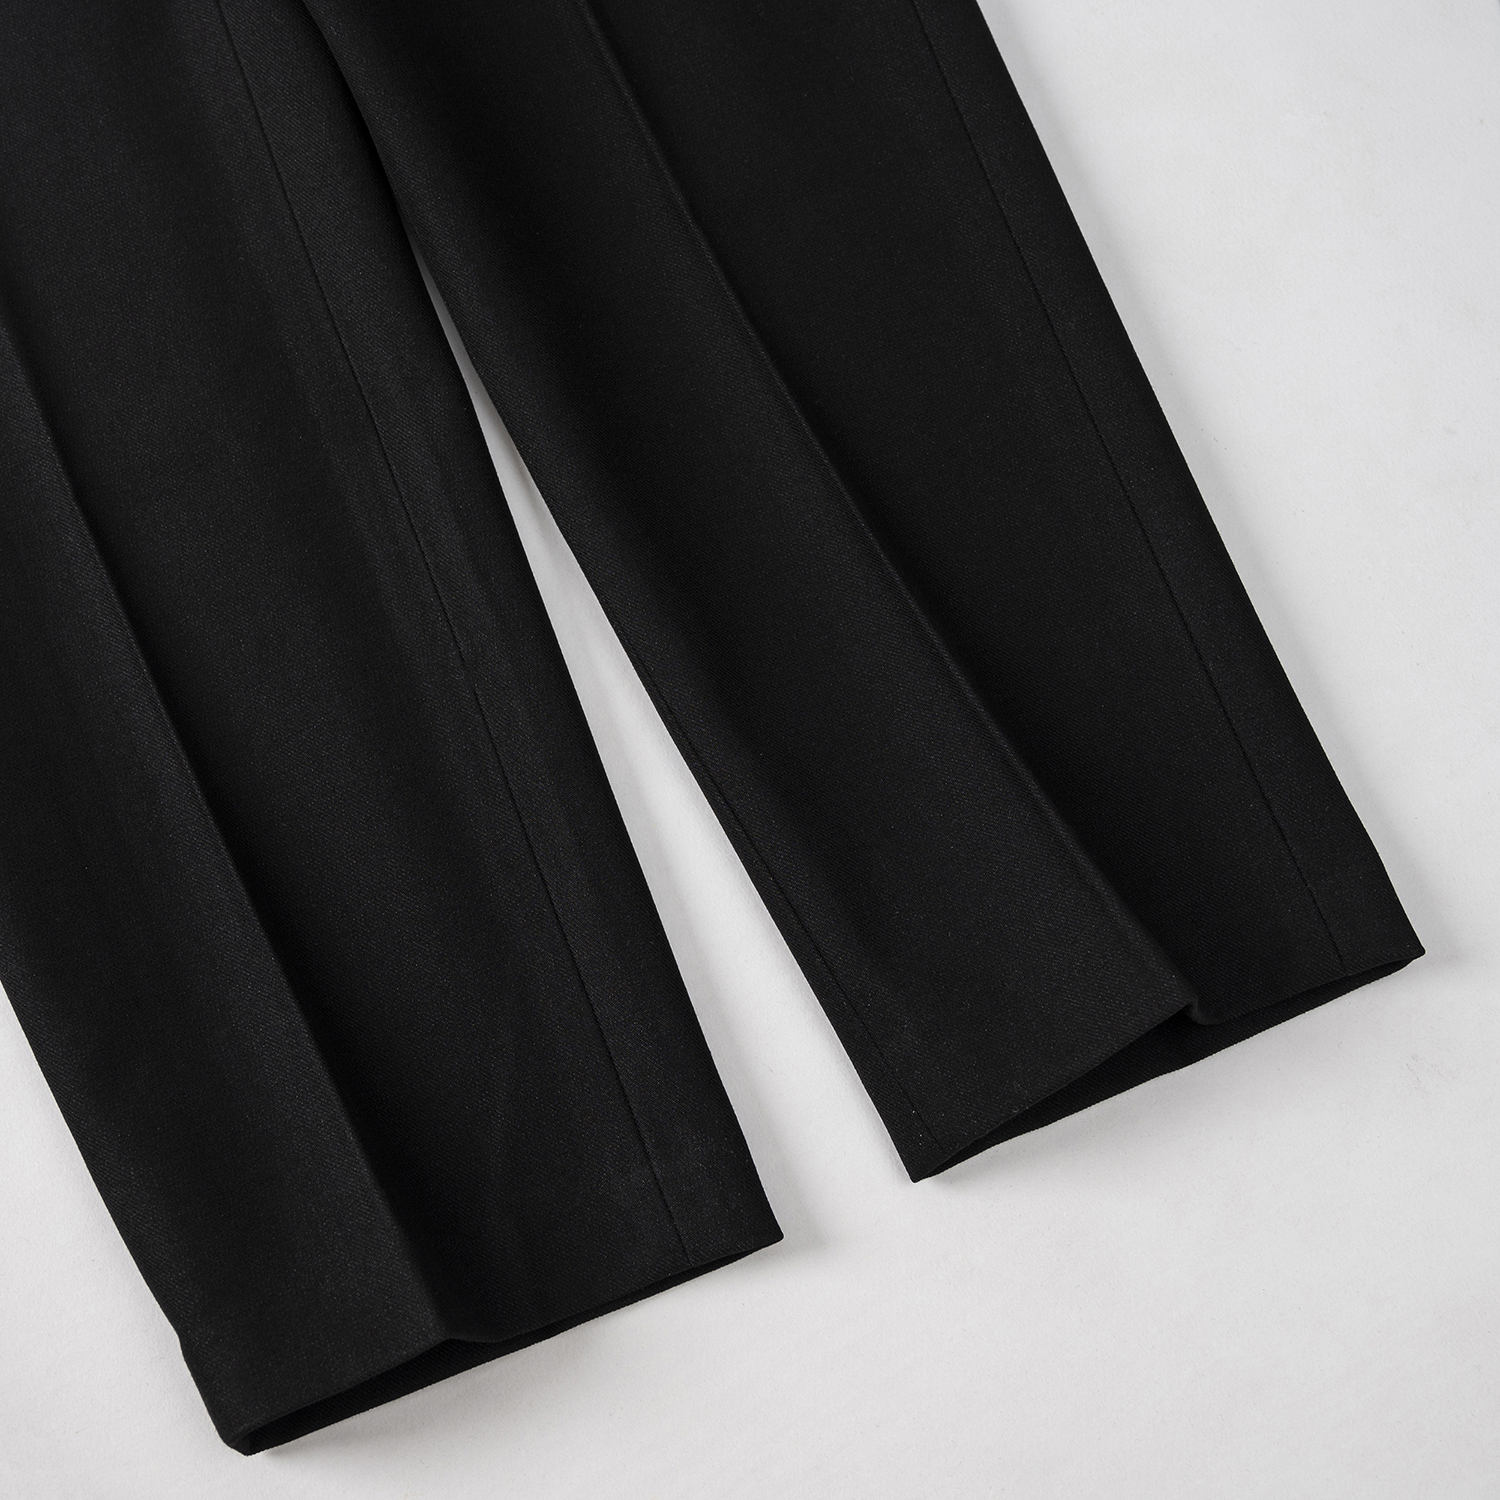 Quần âu nam công sở TUTO5 quần tây đen dài đẹp ống rộng suông Slimfit kiểu dáng Hàn quốc cao cấp đen, xám tím QDT01